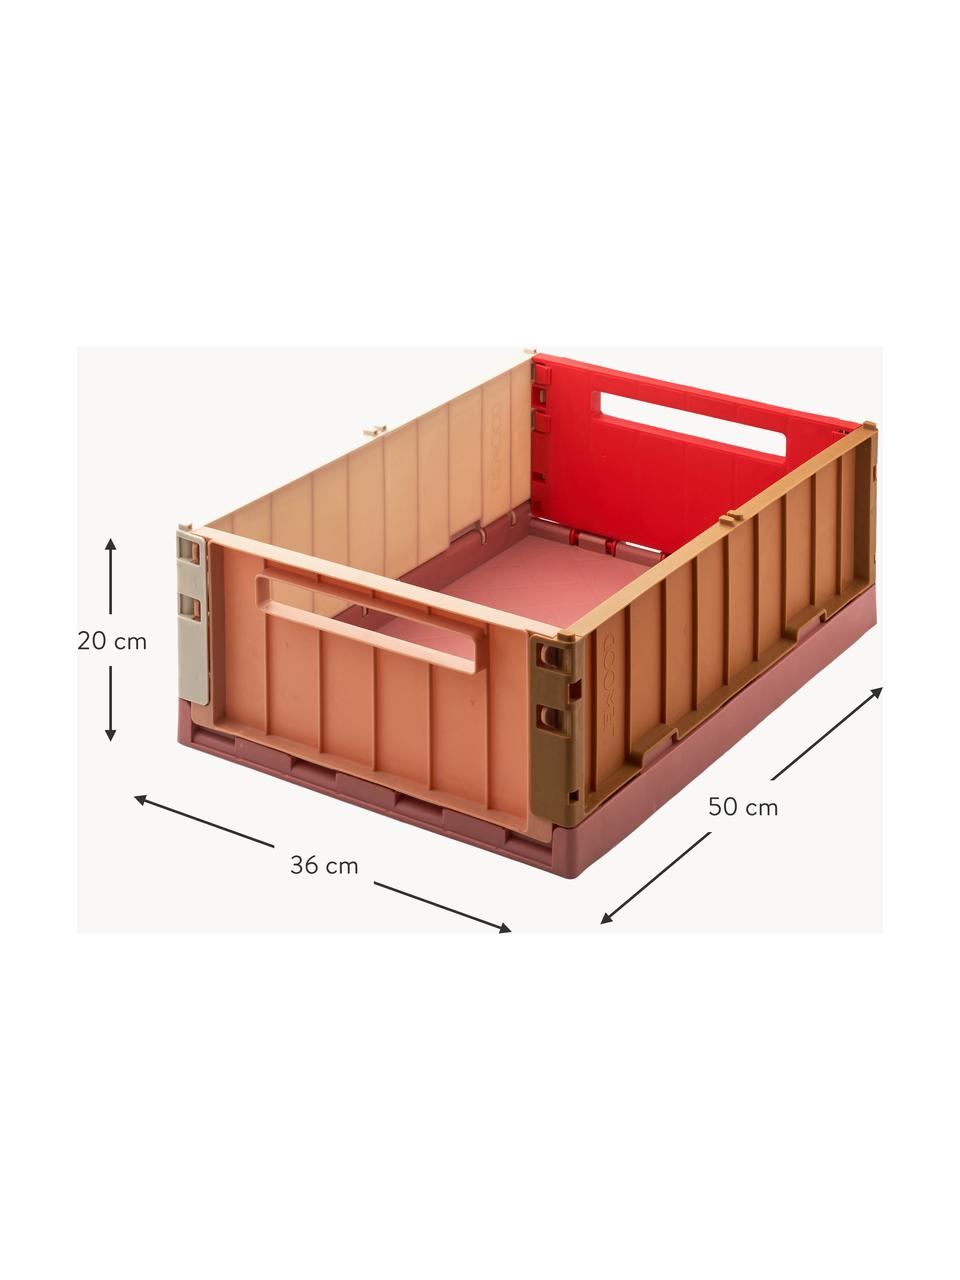 Caja plegable Weston, 60% polipropileno reciclado, 40% polipropileno, Marrón, tonos rosas, rojo coral, An 50 x Al 20 cm